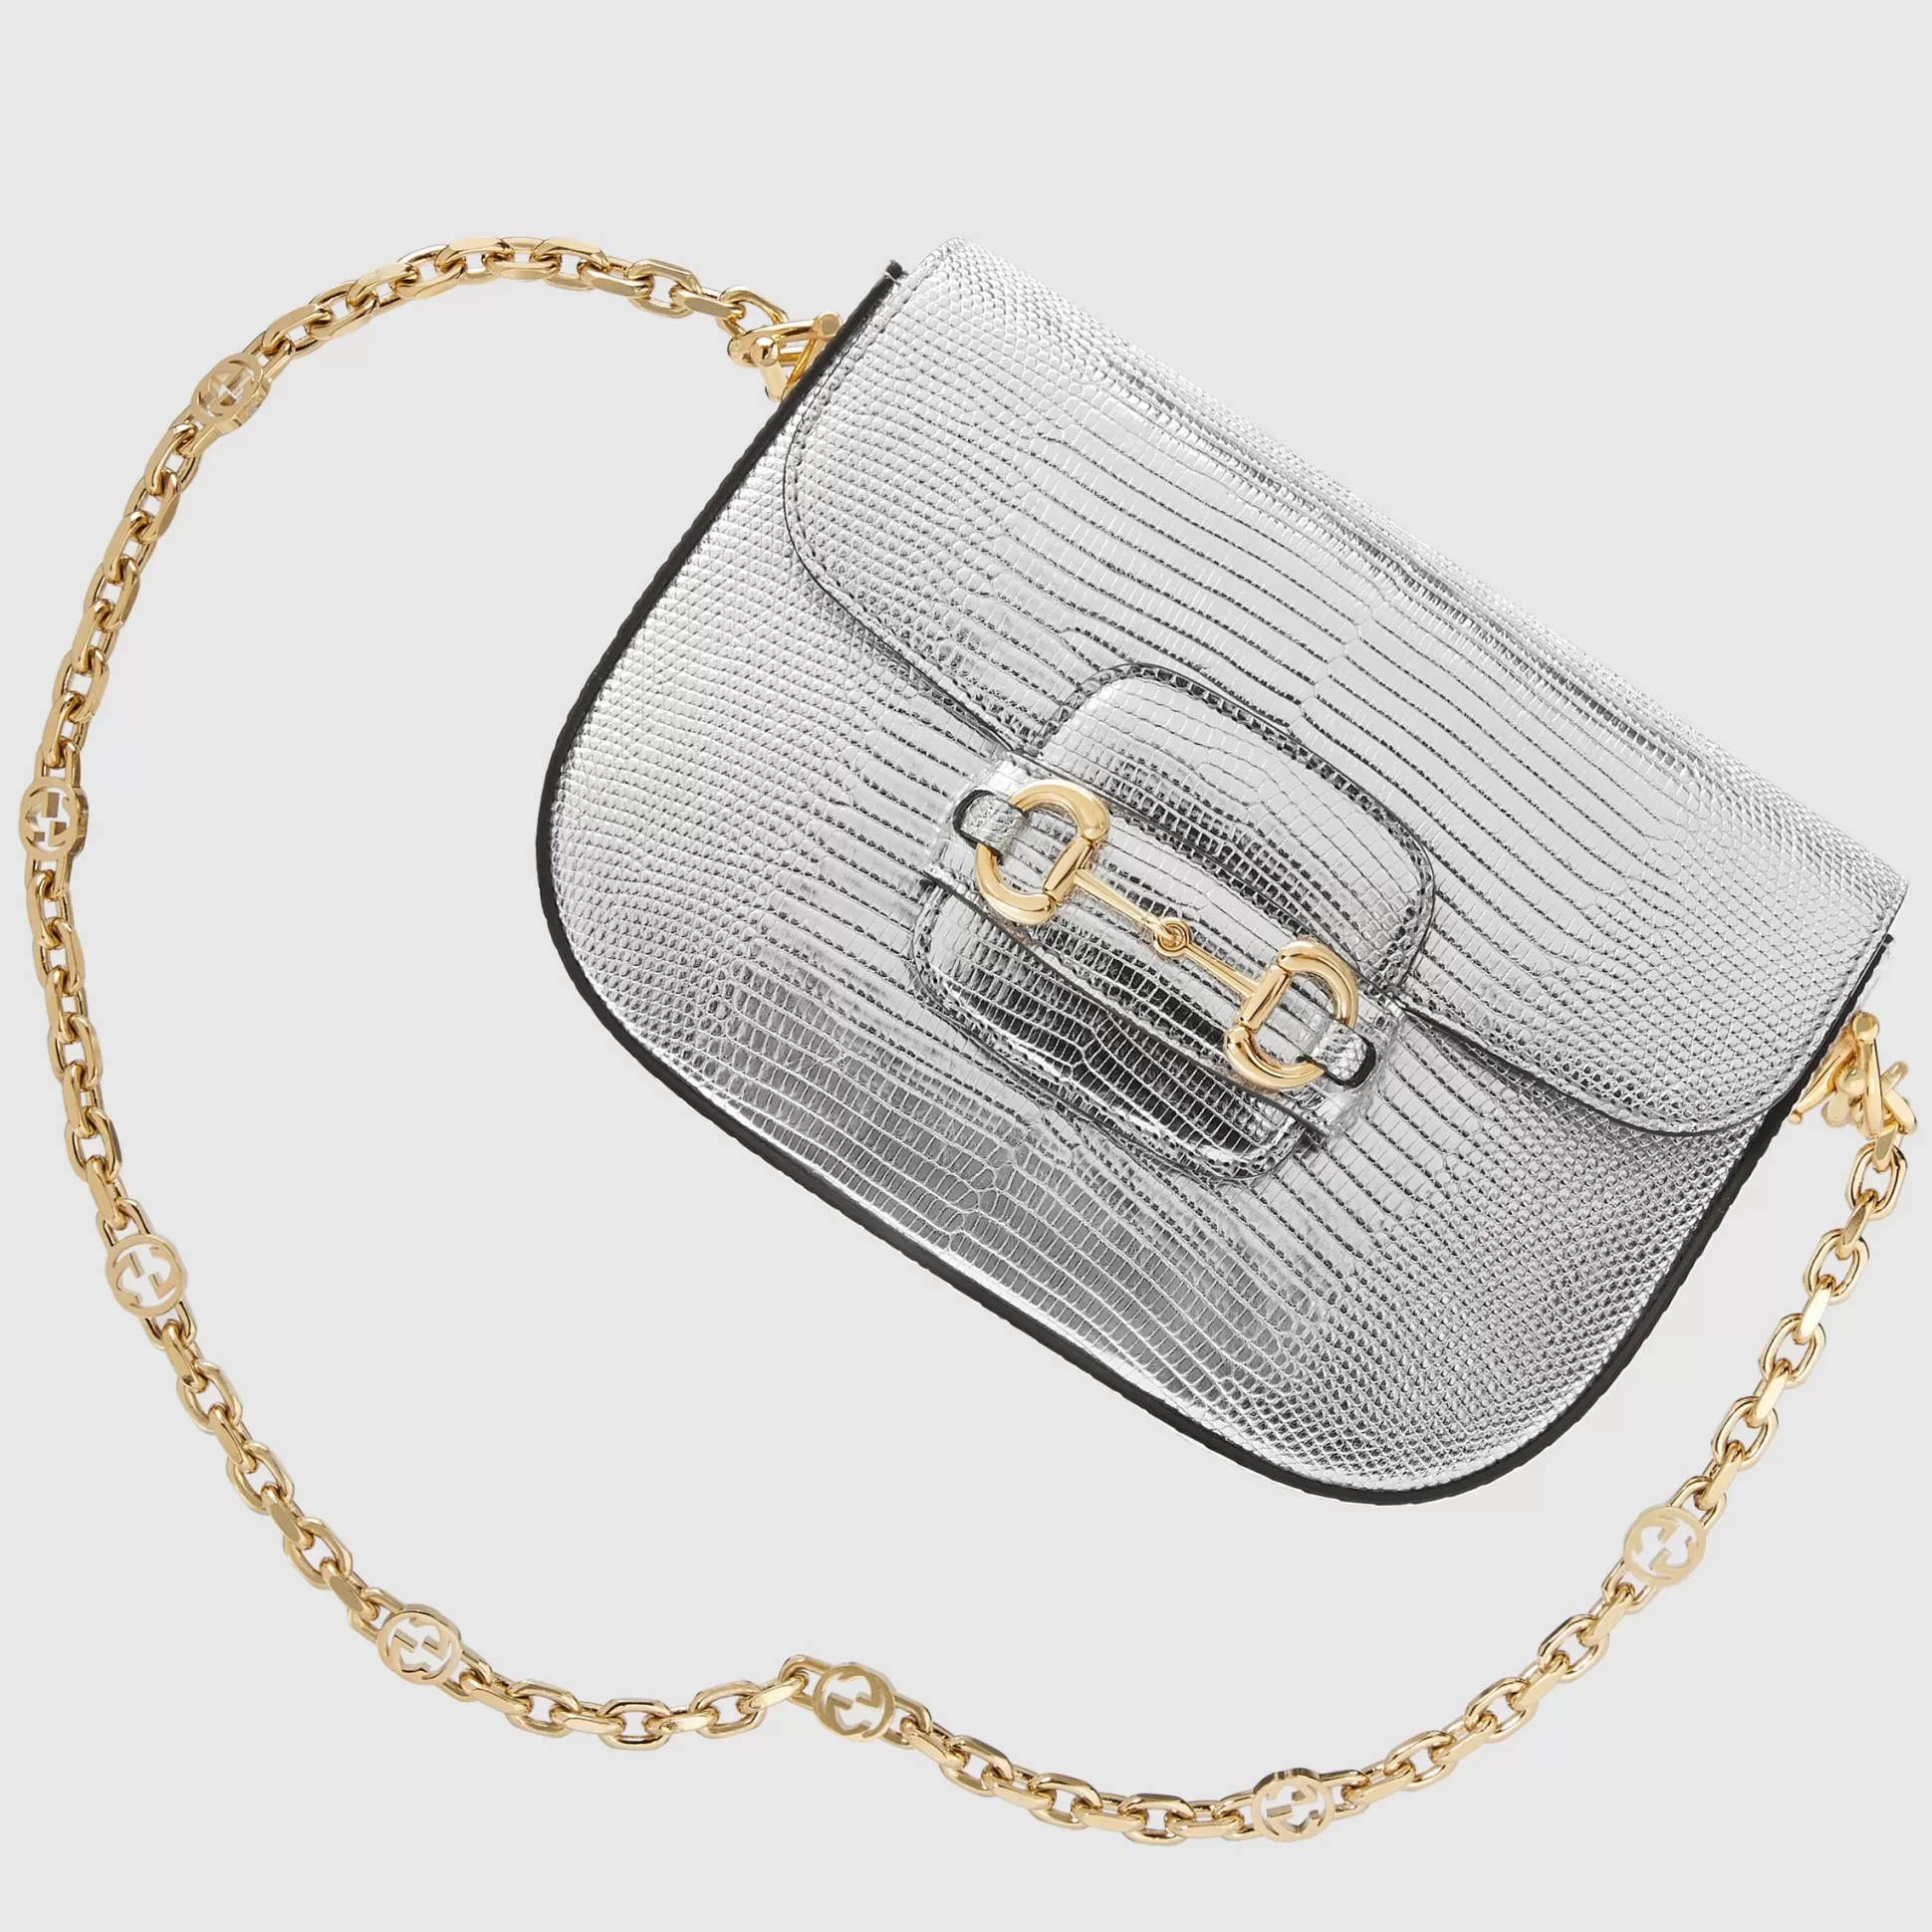 GUCCI Horsebit 1955 Lizard Mini Bag-Women Precious Handbags